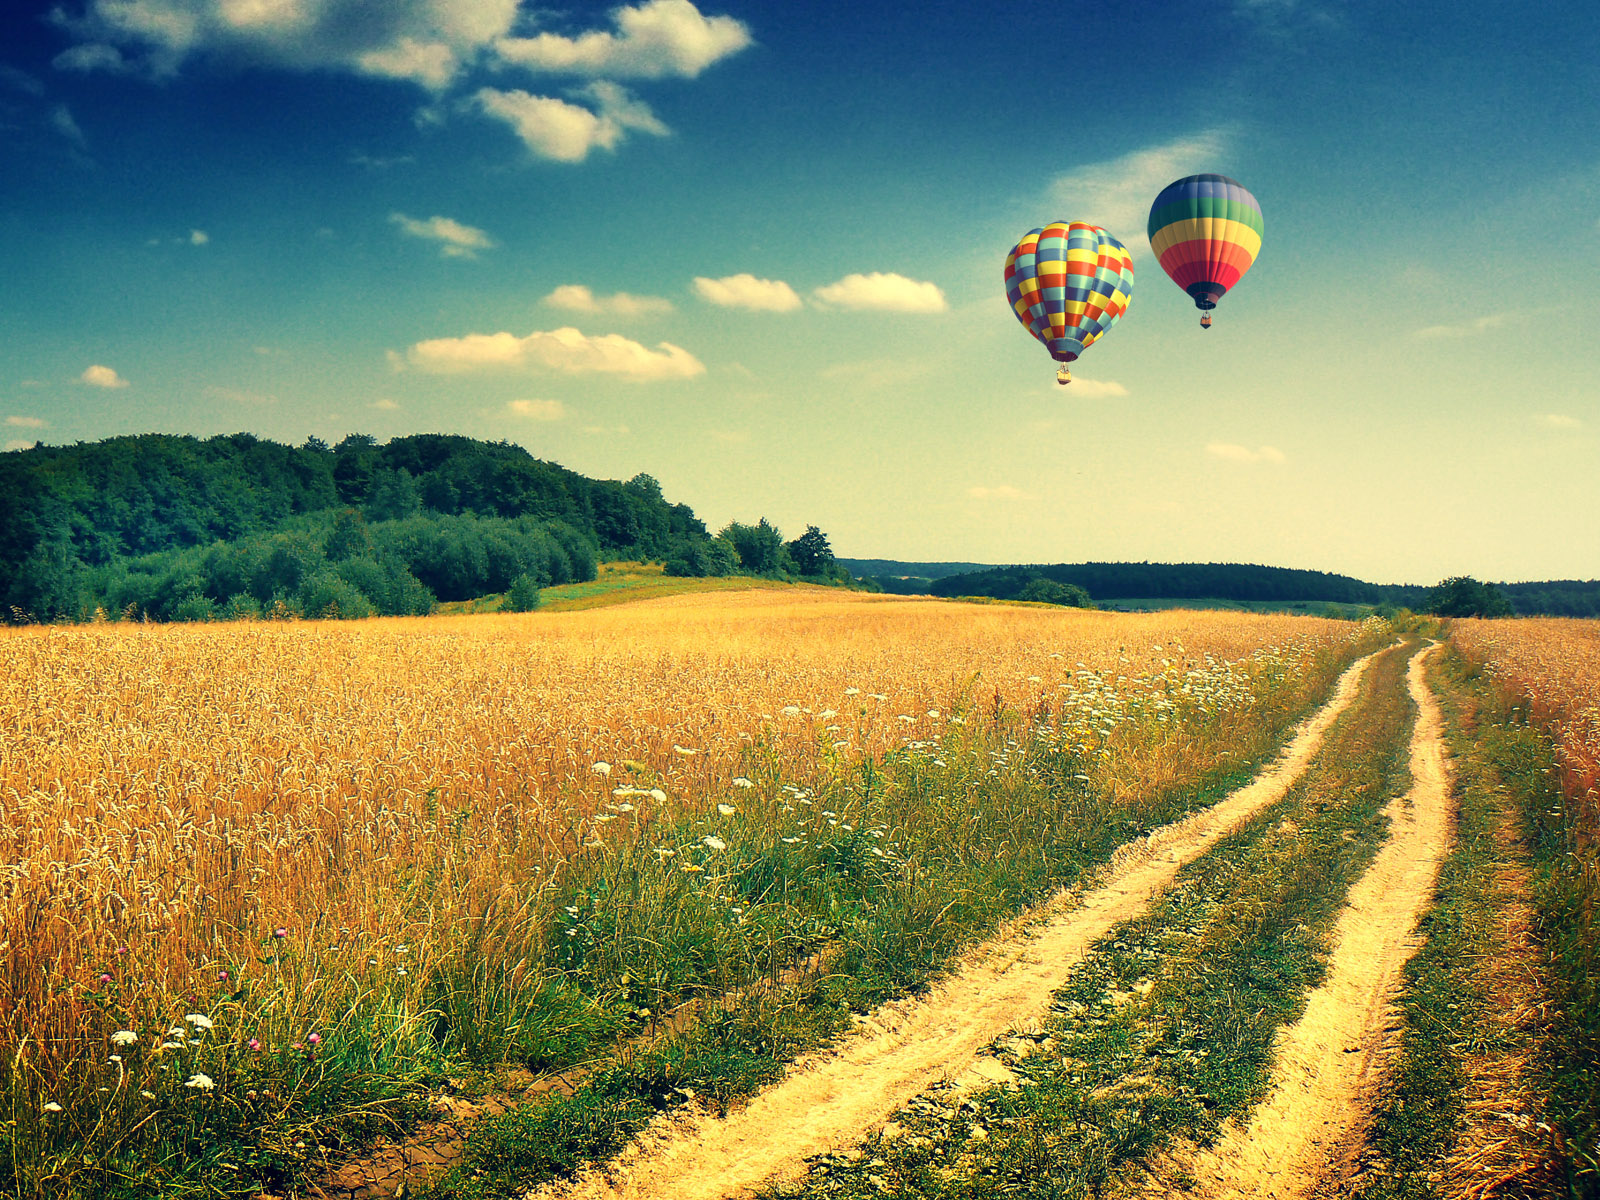 気球の壁紙,熱気球,熱気球,空,自然の風景,バルーン